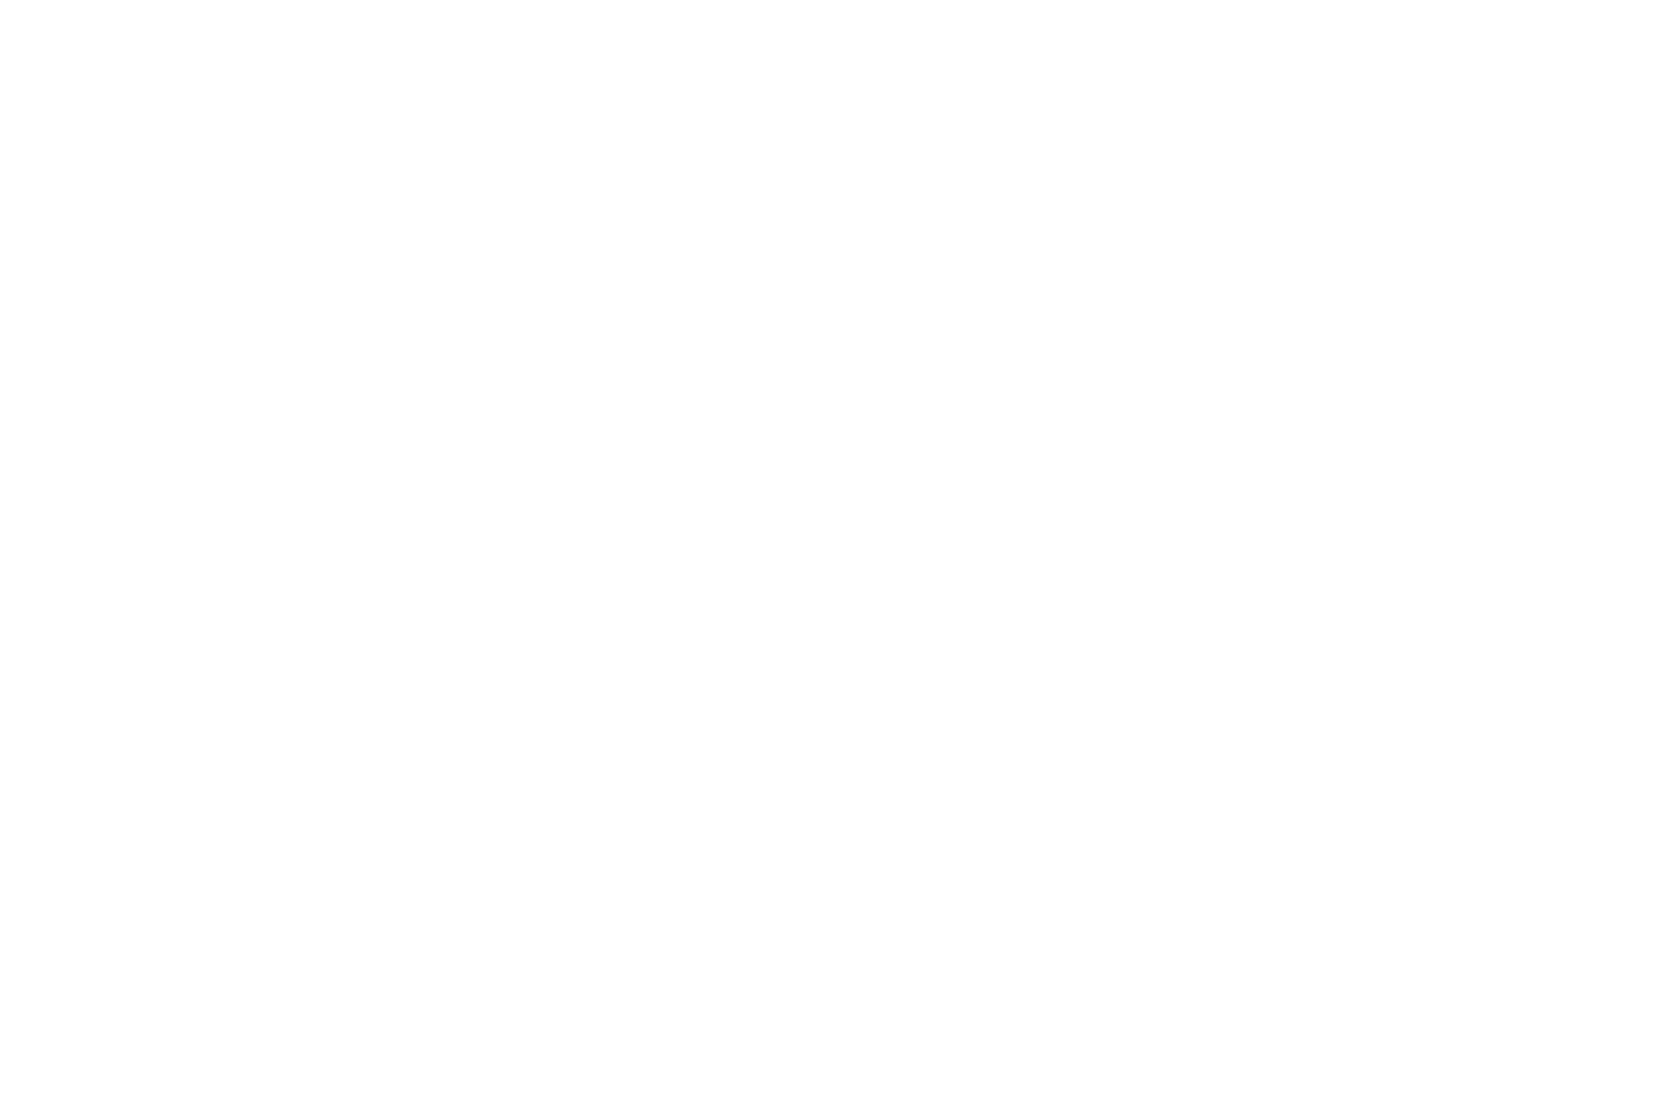 Детальне зображення швидкознімного патрона шуруповерта.